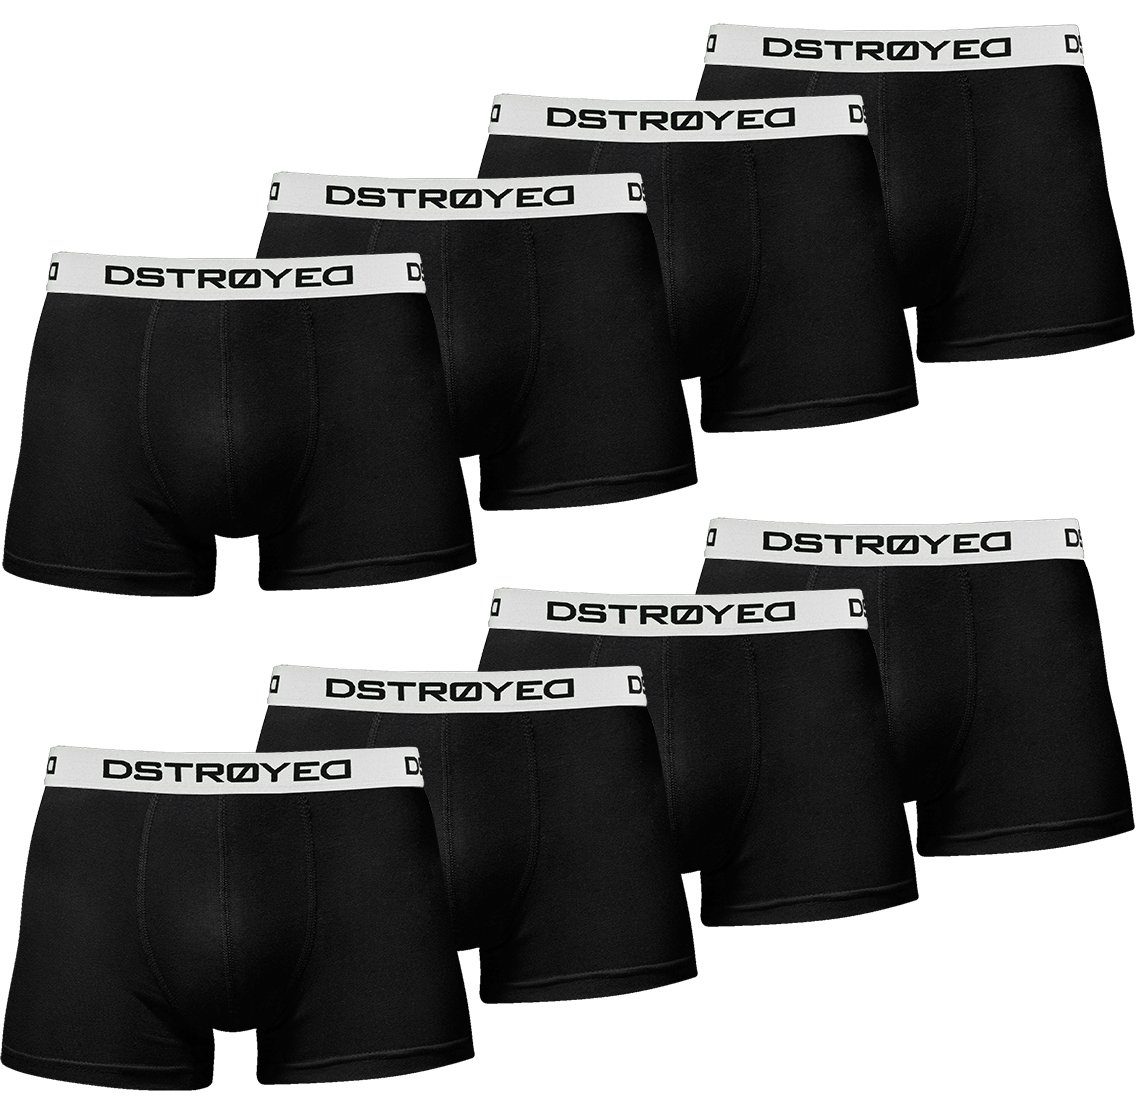 315b-schwarz/weiß (Vorteilspack, DSTROYED 8er, Qualität Premium 8er Unterhosen Boxershorts Pack) perfekte Männer Passform Baumwolle Herren